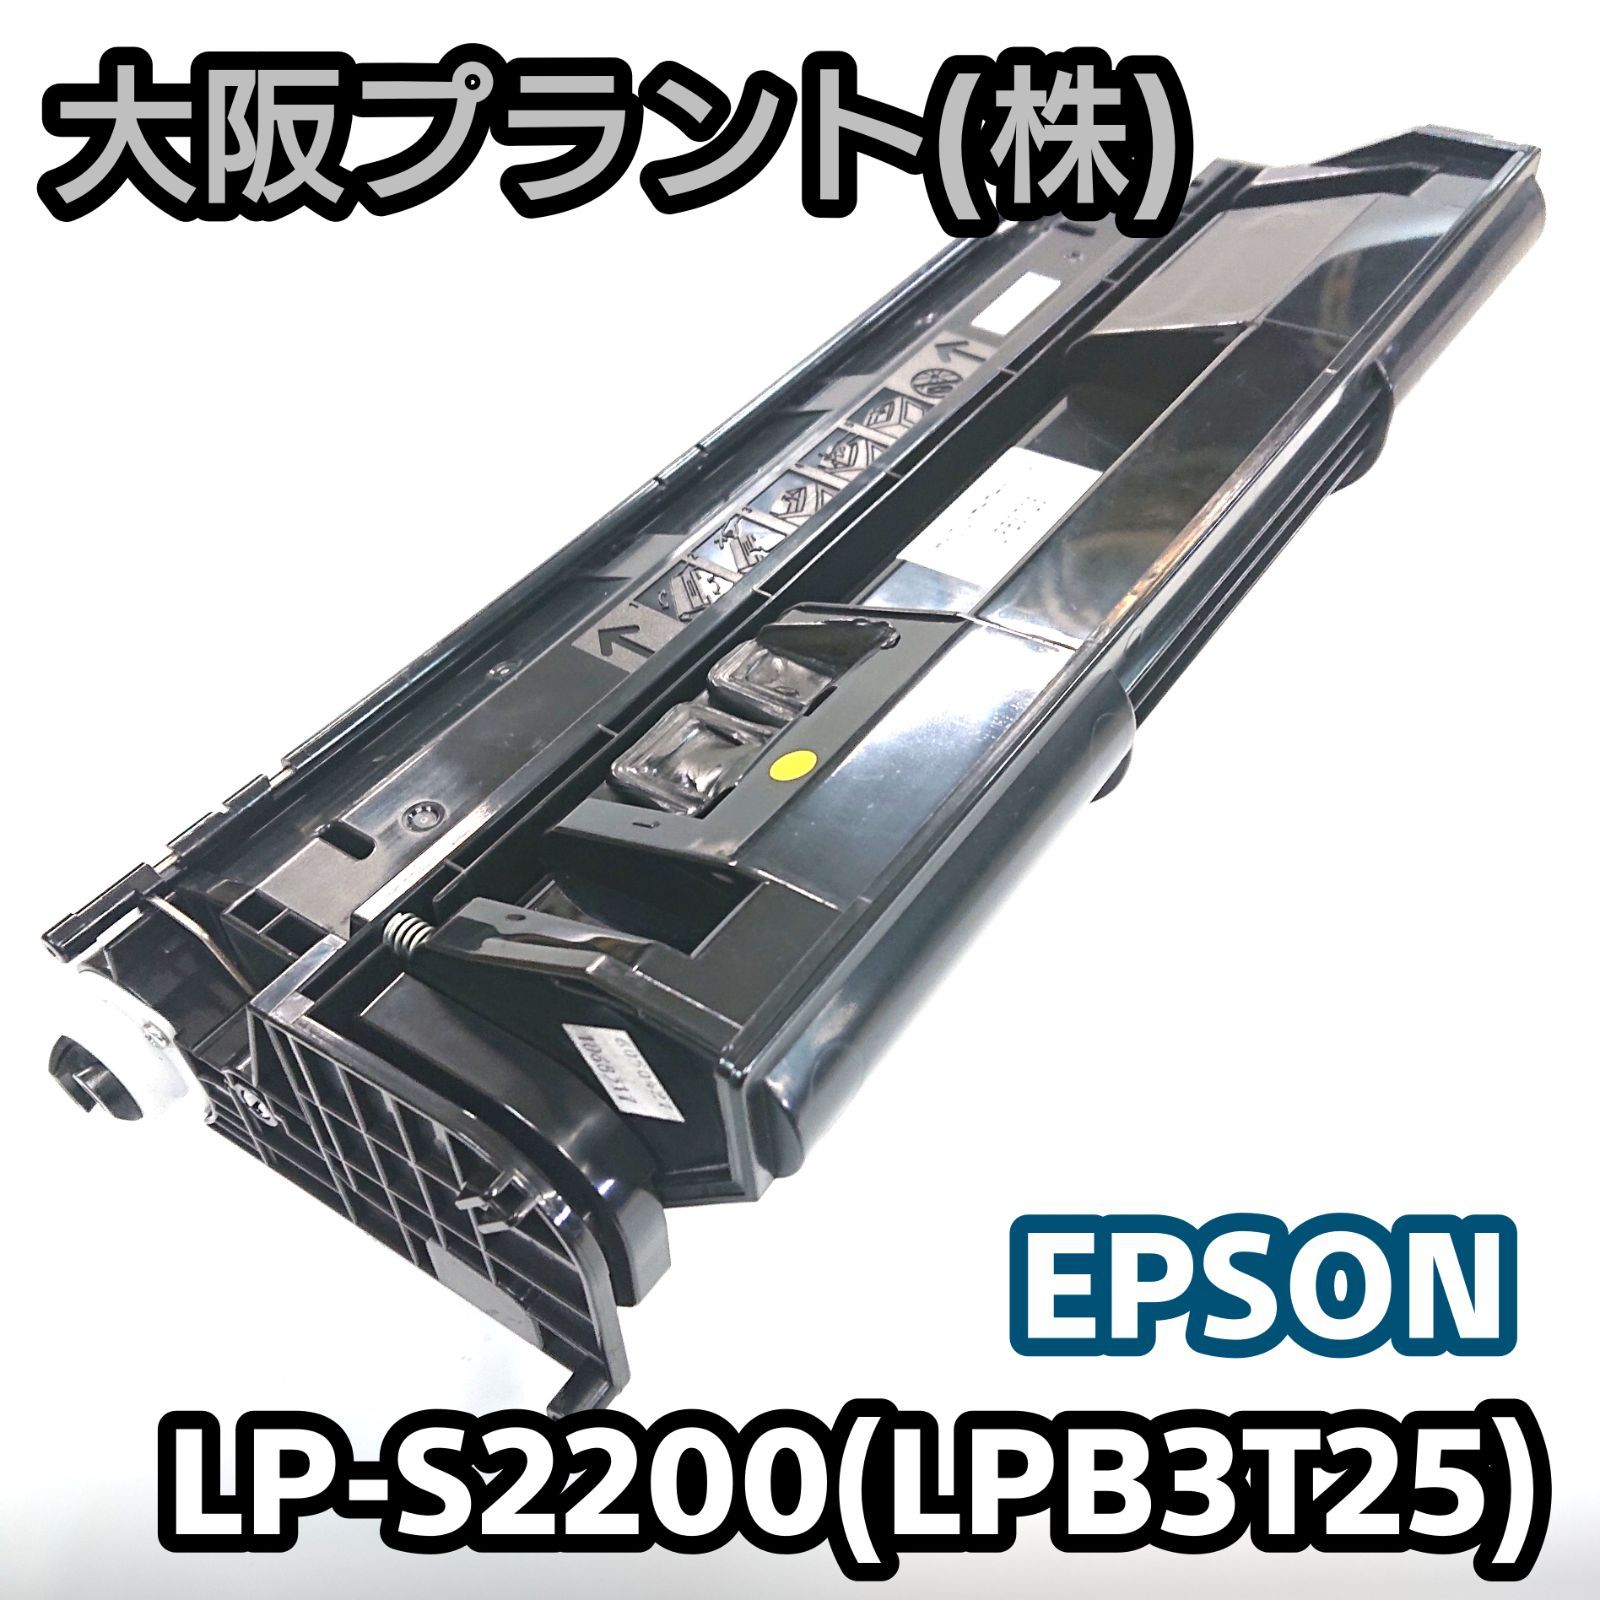 【大阪プラント】再生 エプソン LP-S2200(LPB3T25) No.05